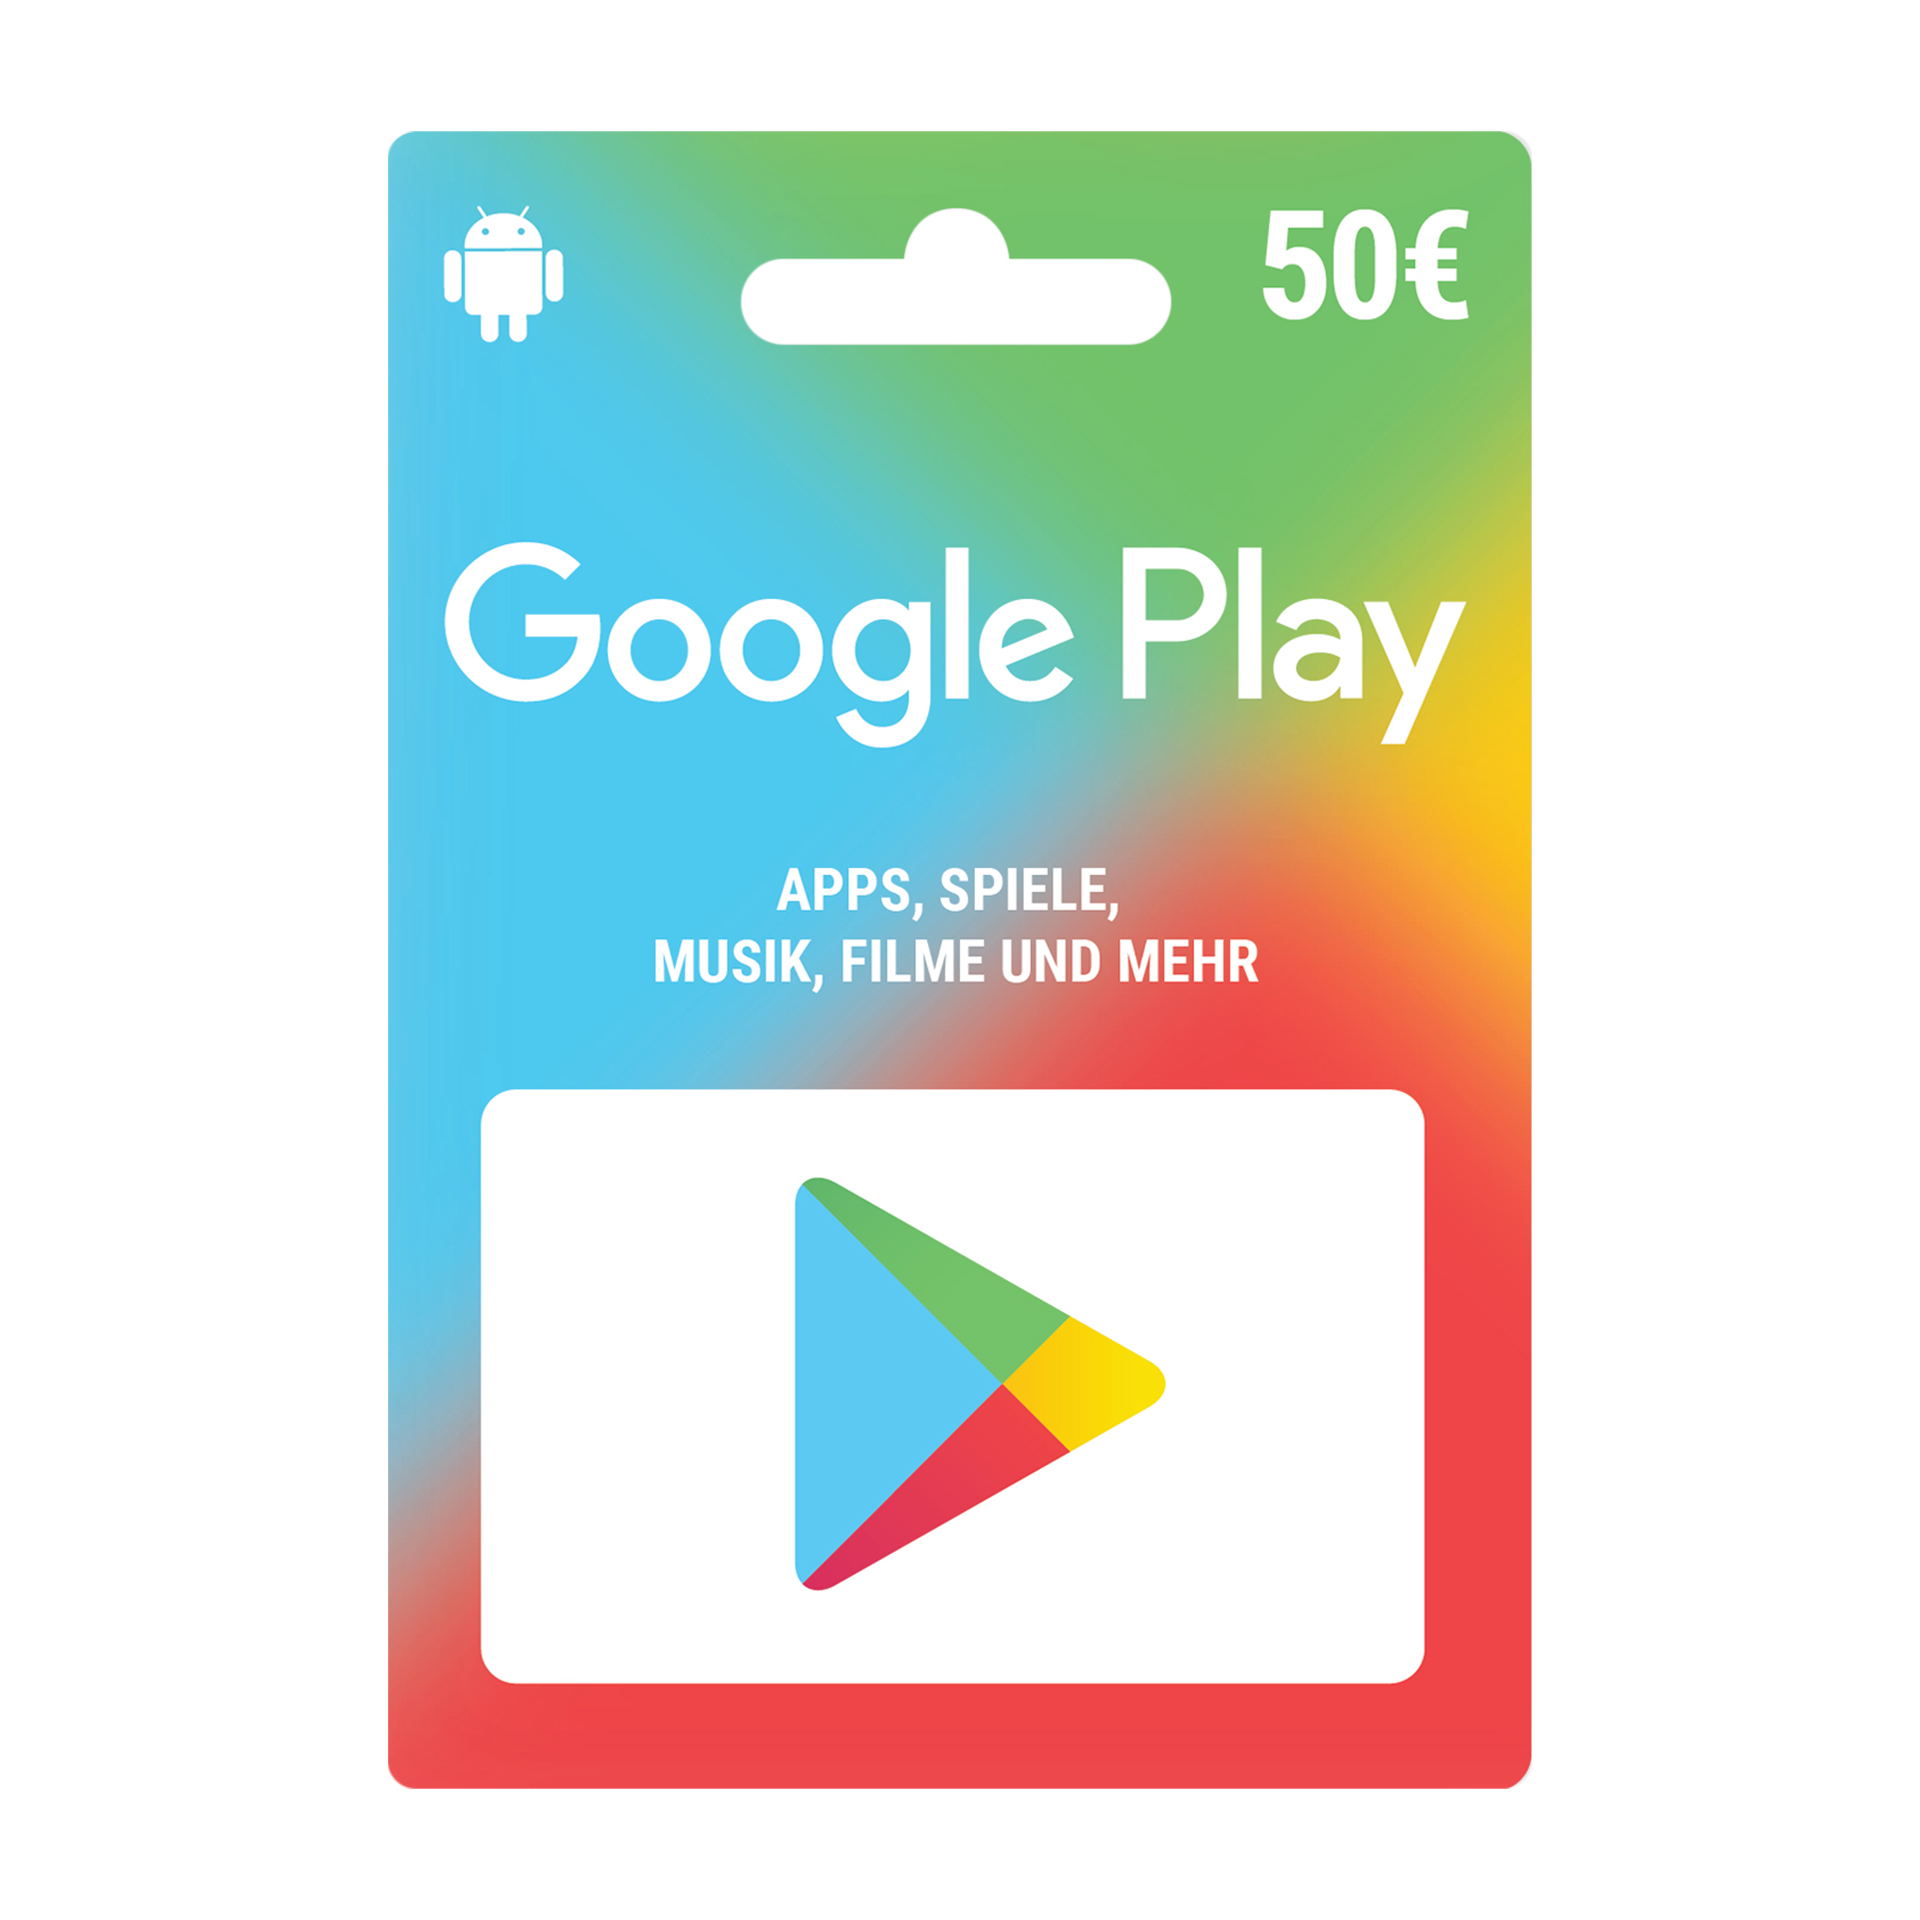 Google Play 5 € Guthabenkarte günstig bei ALDI Nord